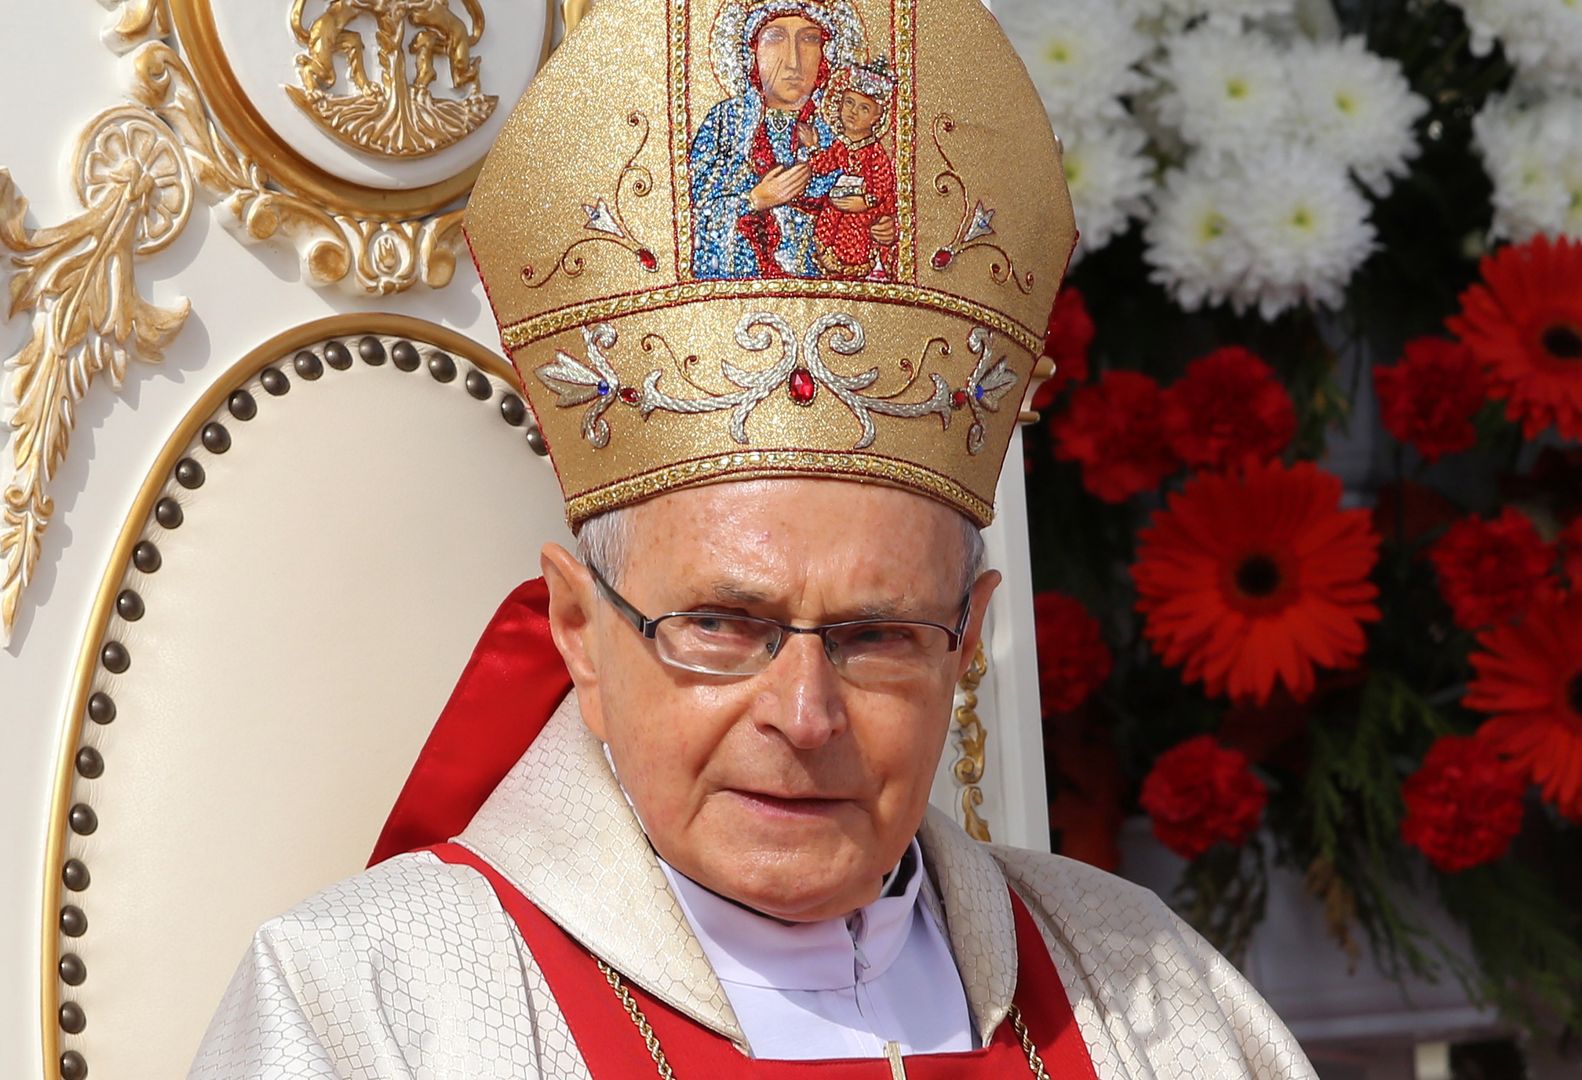 Biskup Antoni Długosz o sytuacji rodzinnej Krawczyków: "Szkoda mi juniora"